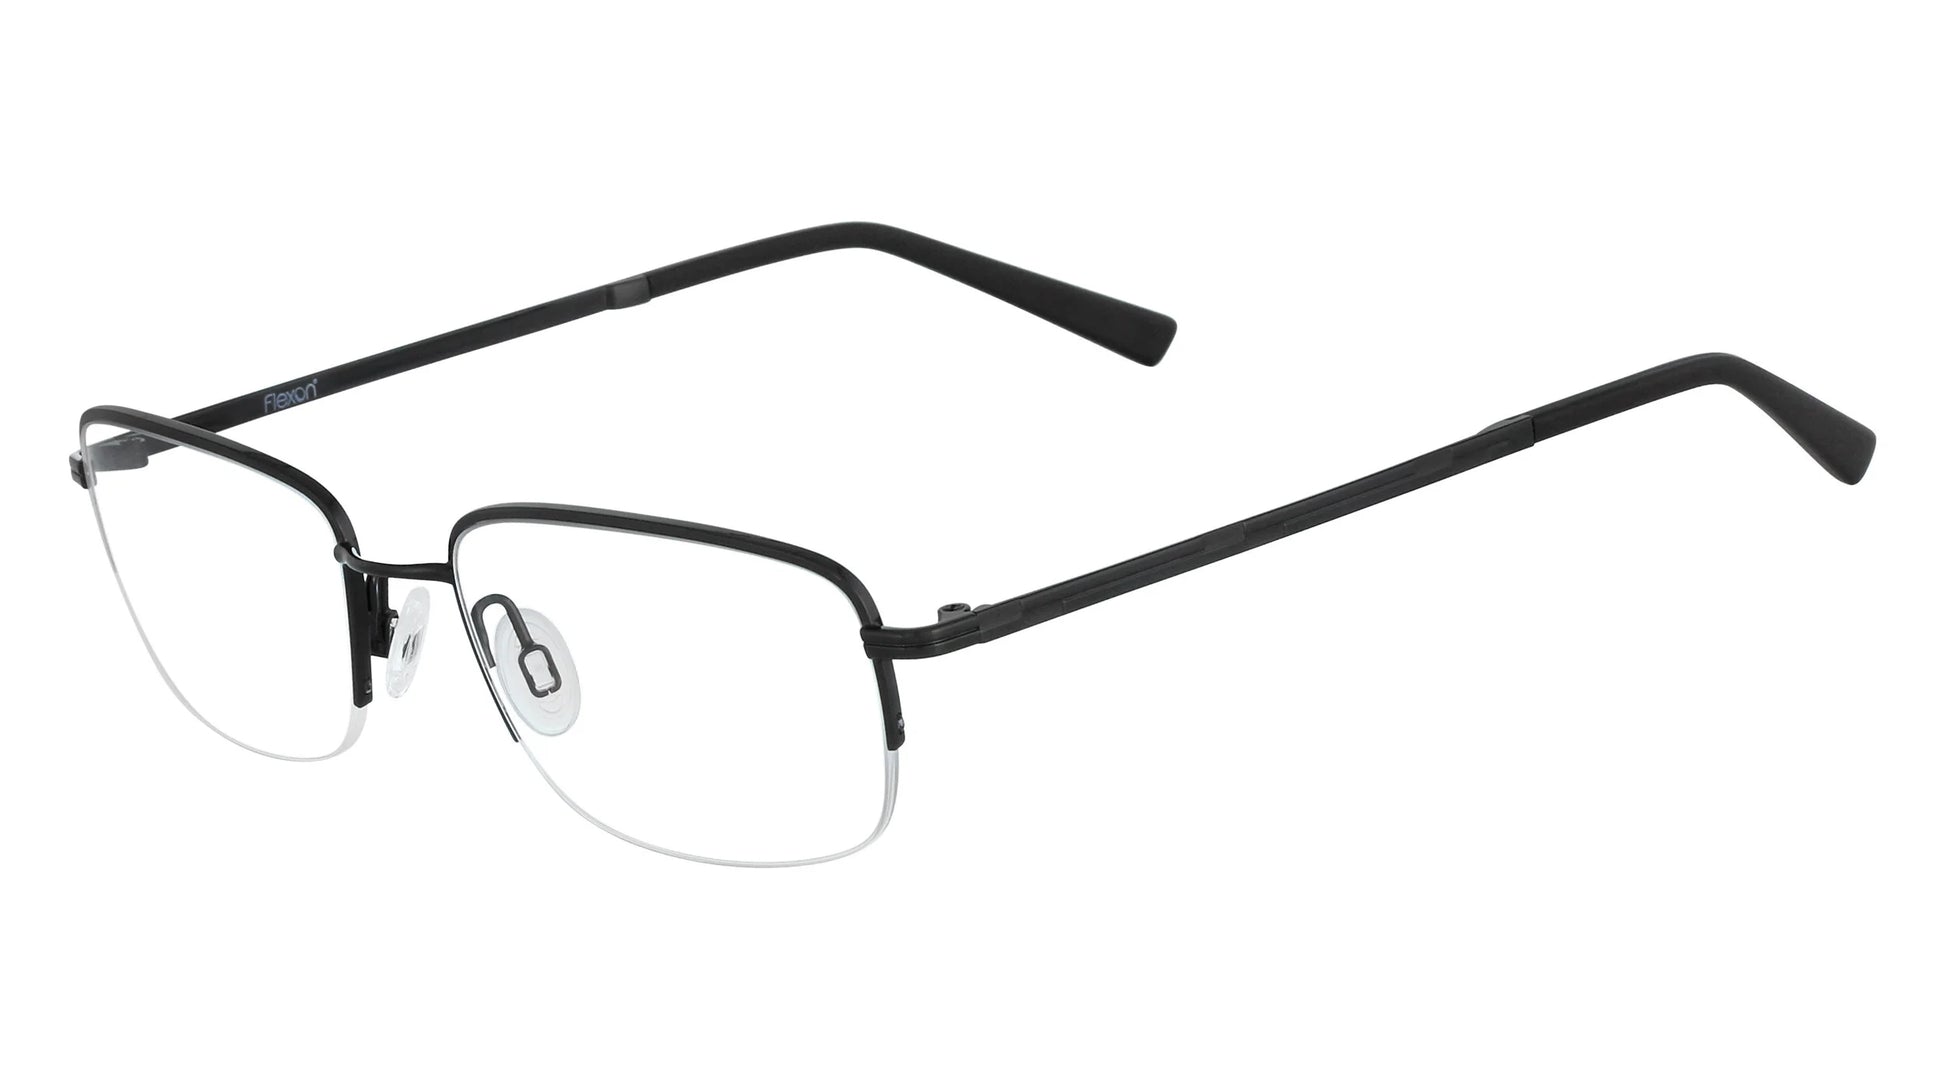 Flexon MELVILLE 600 Eyeglasses Black Chrome